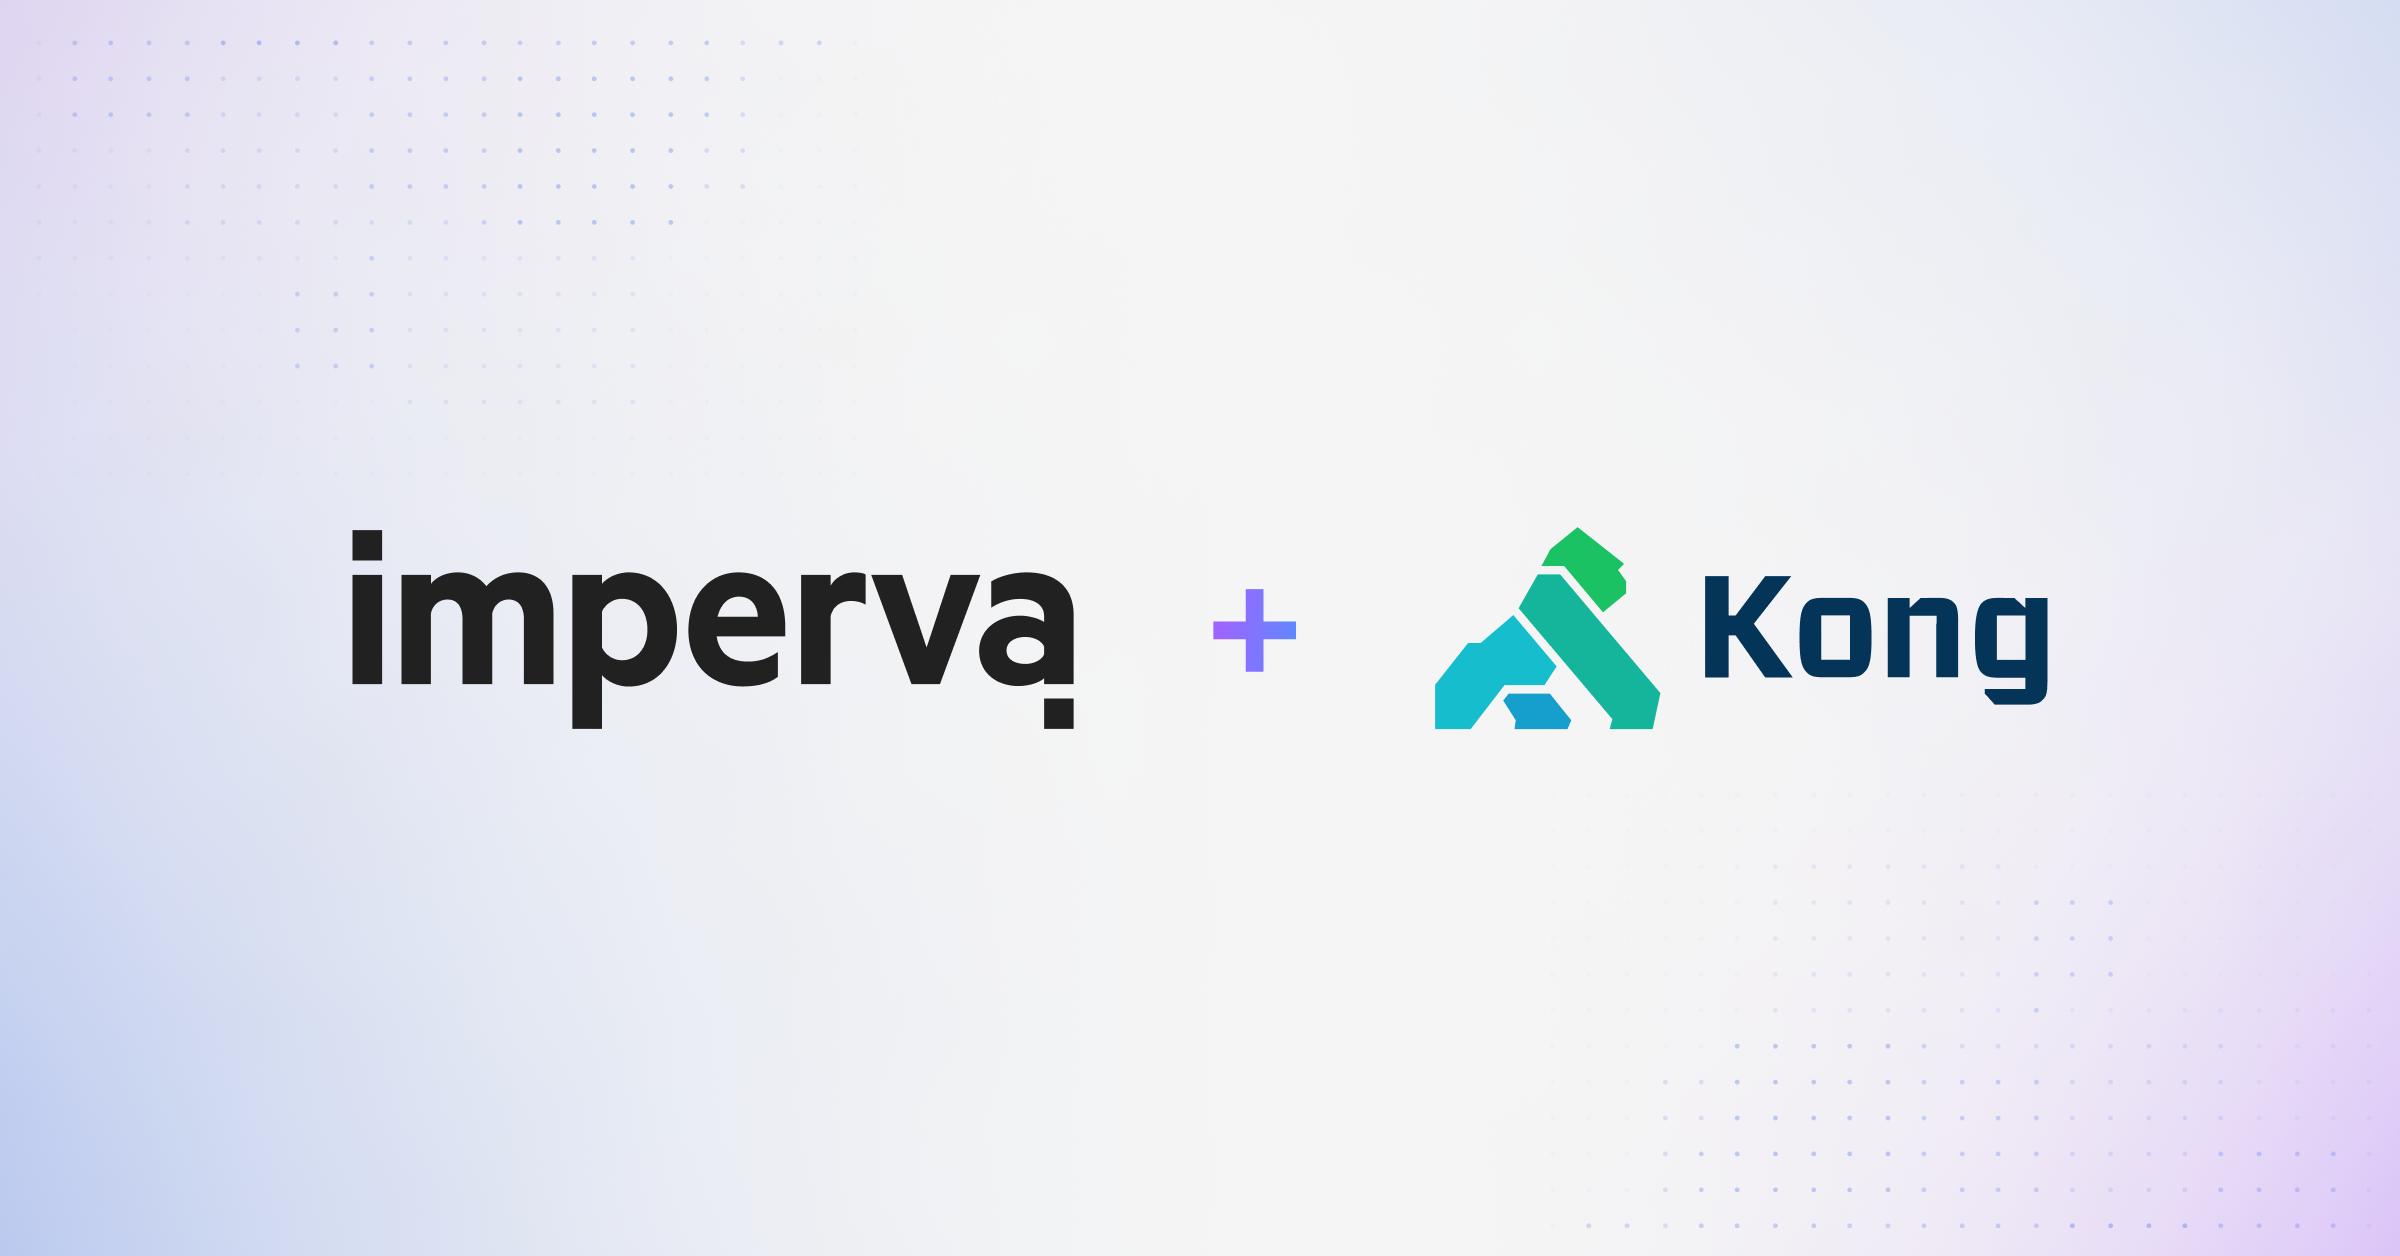 ImpervaとKongの提携により、API管理を強化